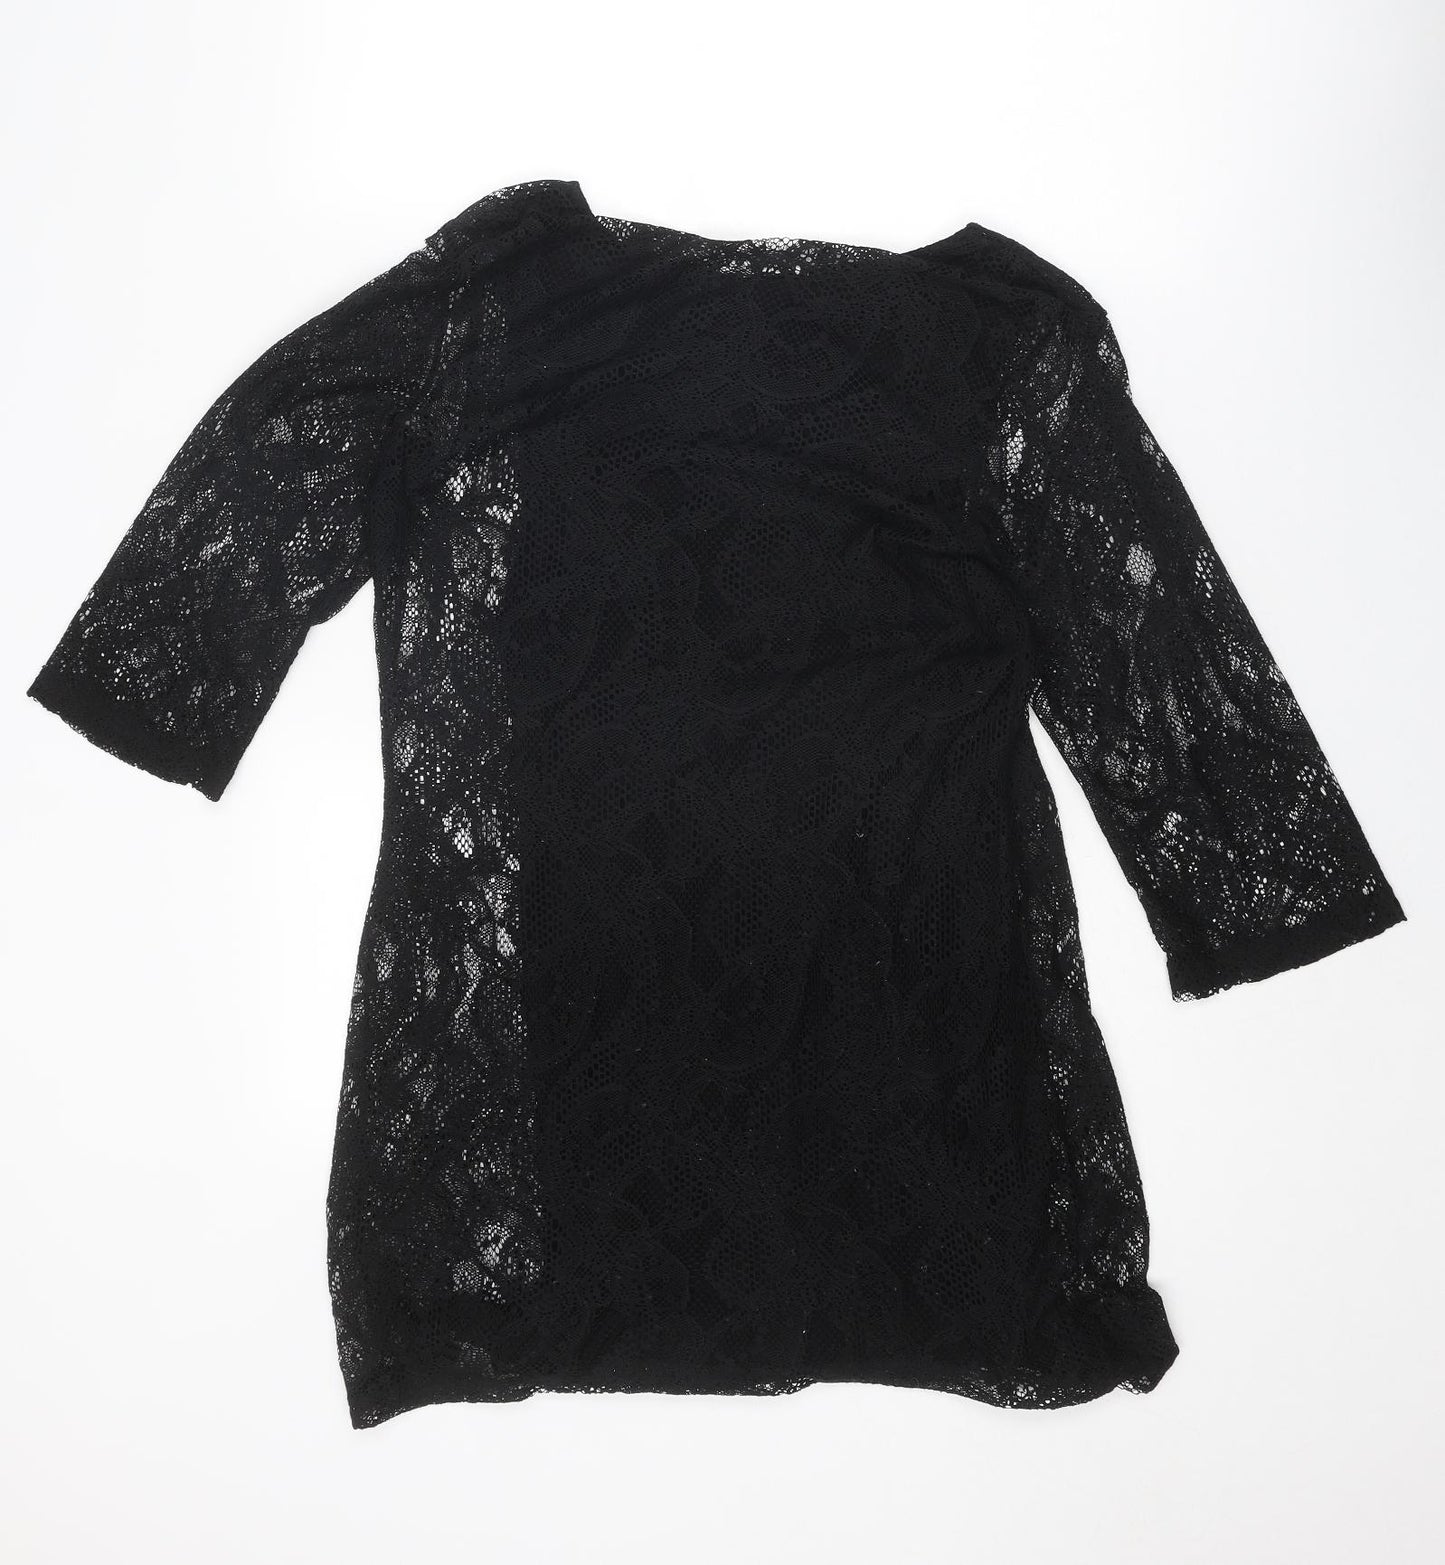 VERO MODA Womens Black Polyester Mini Size L Boat Neck Pullover